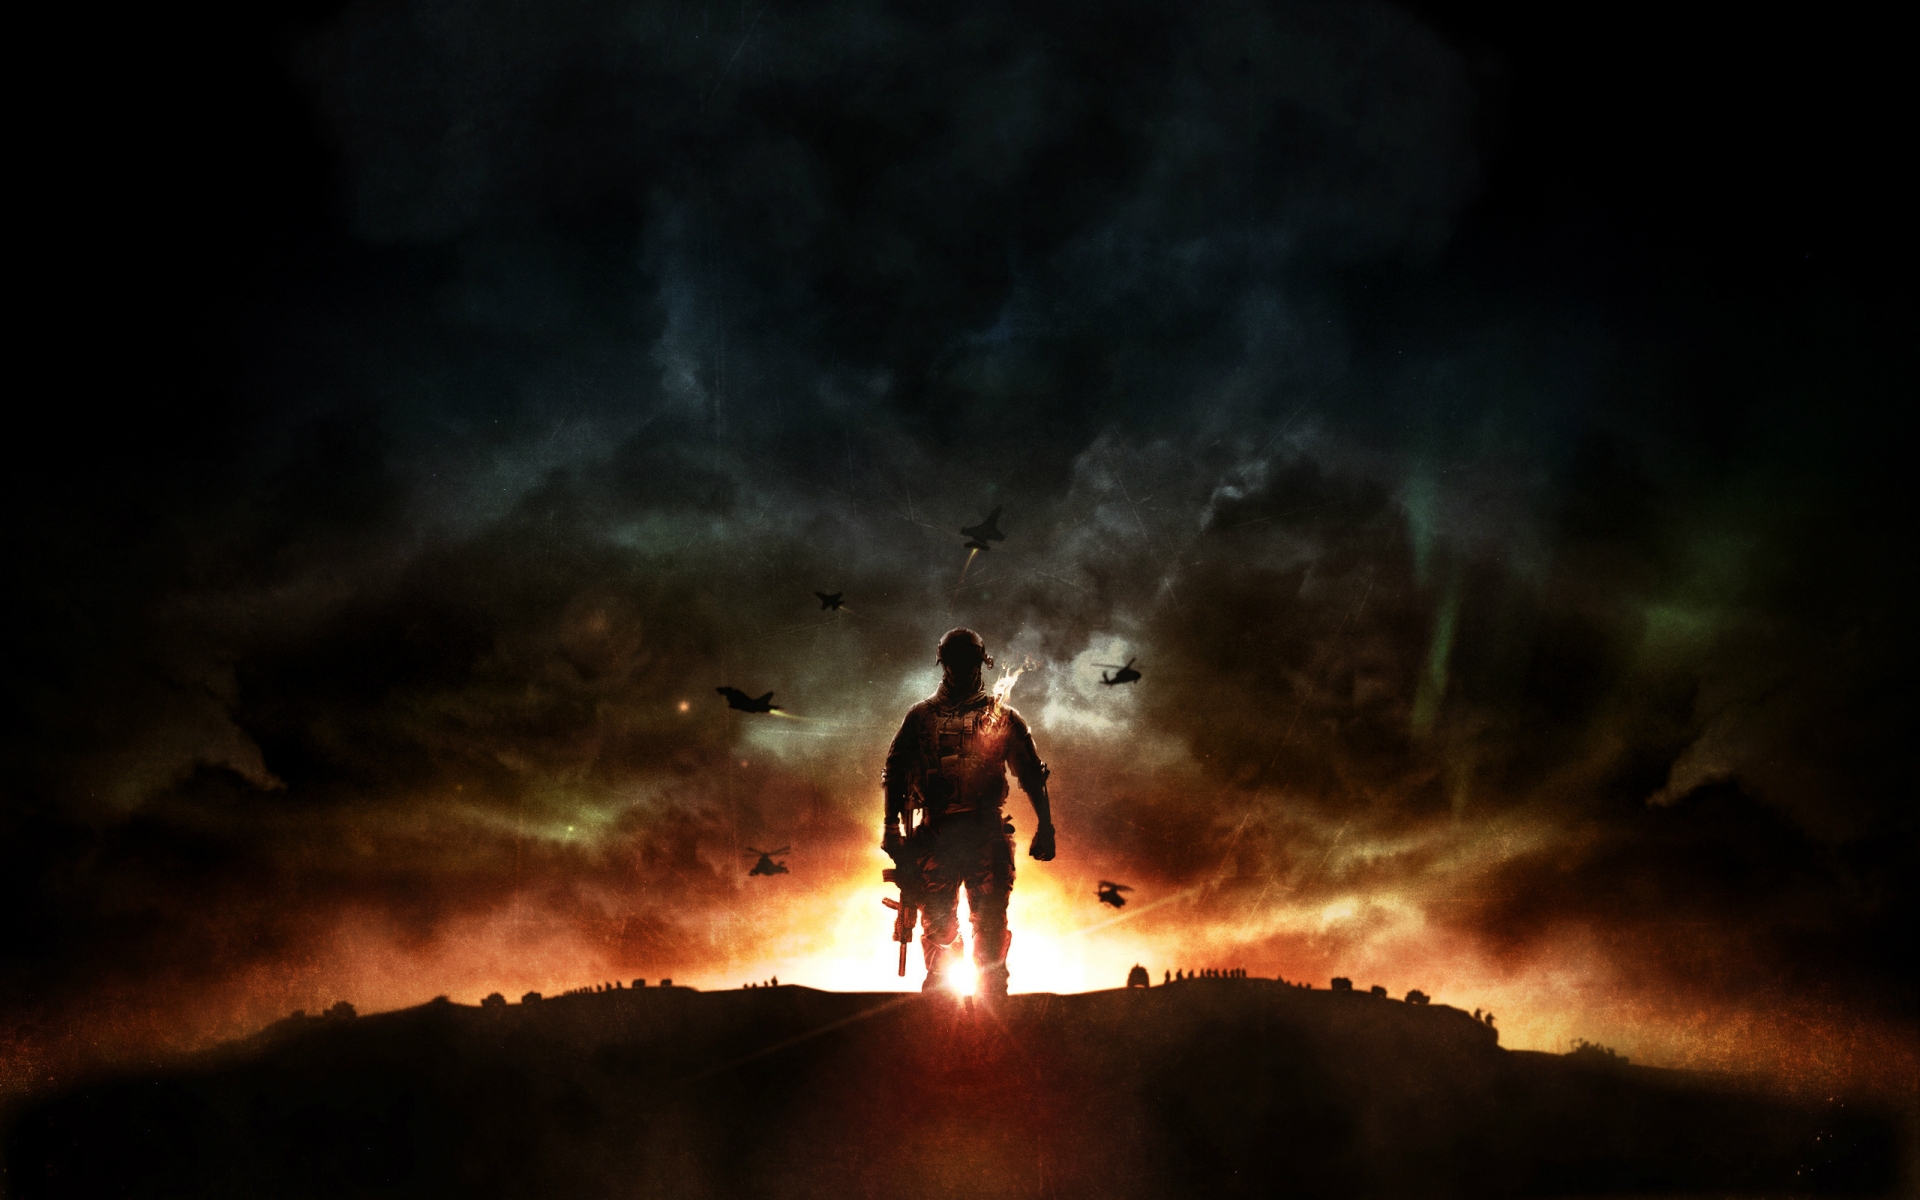 Battlefield 4 Sunset War for 1920 x 1200 widescreen resolution